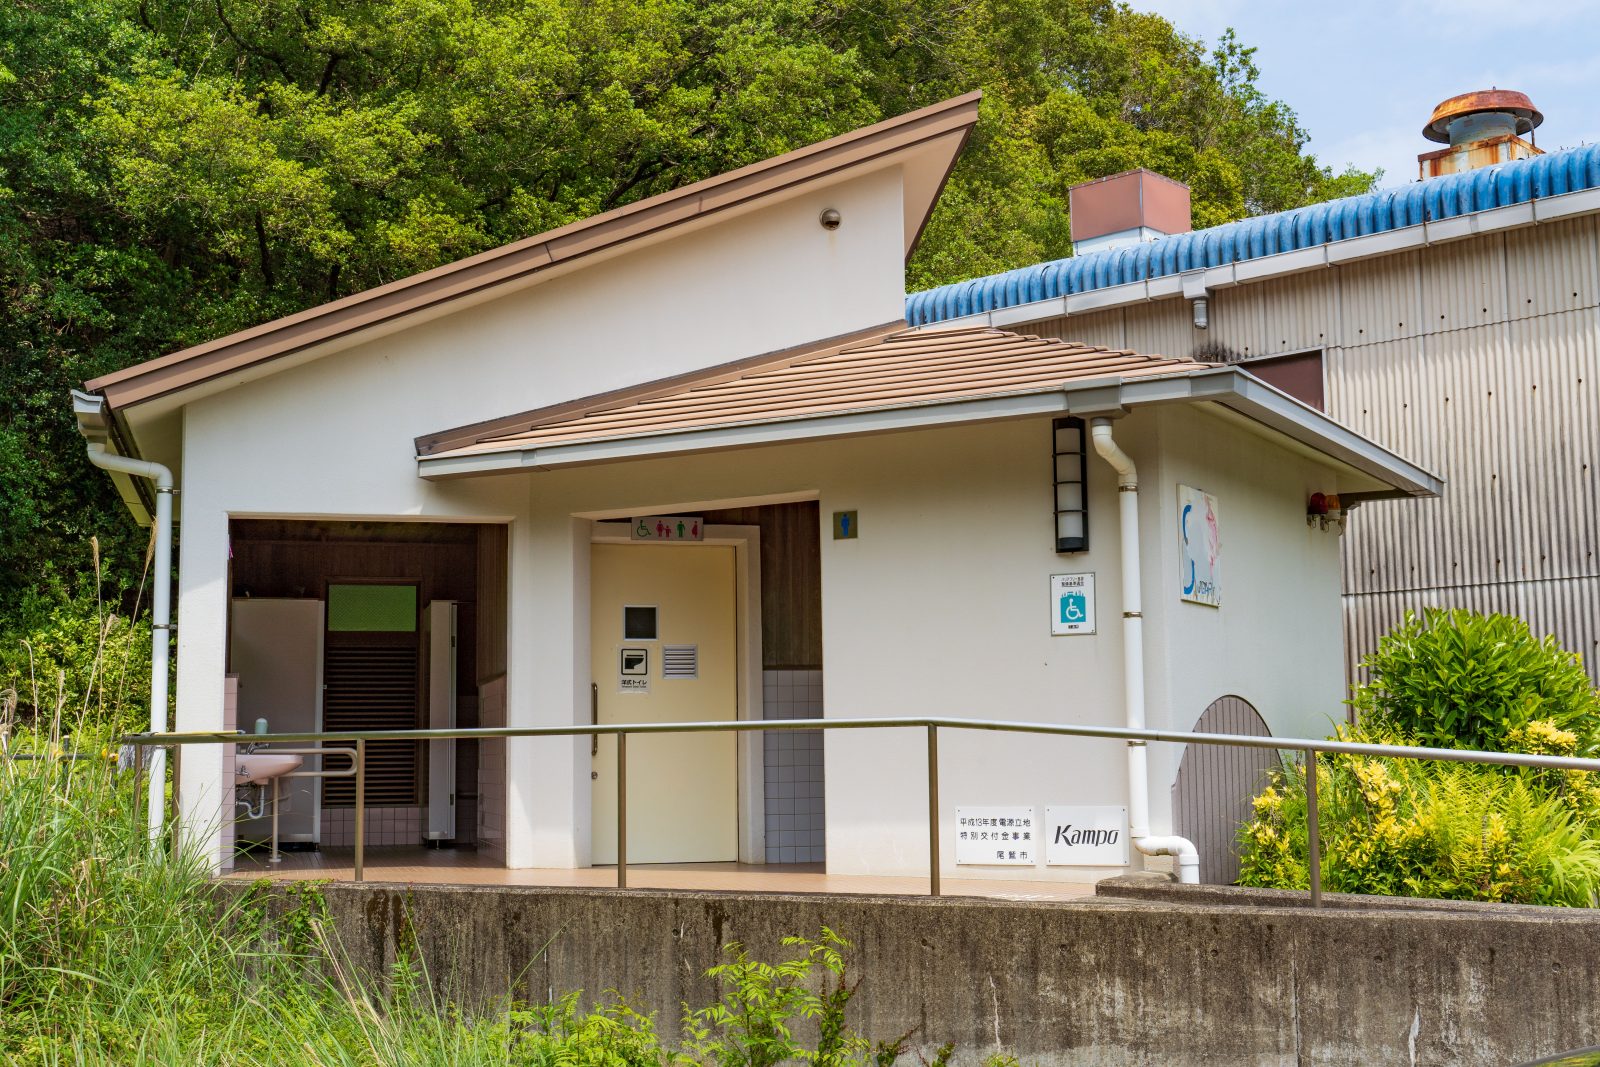 須賀利町で唯一の公衆トイレ